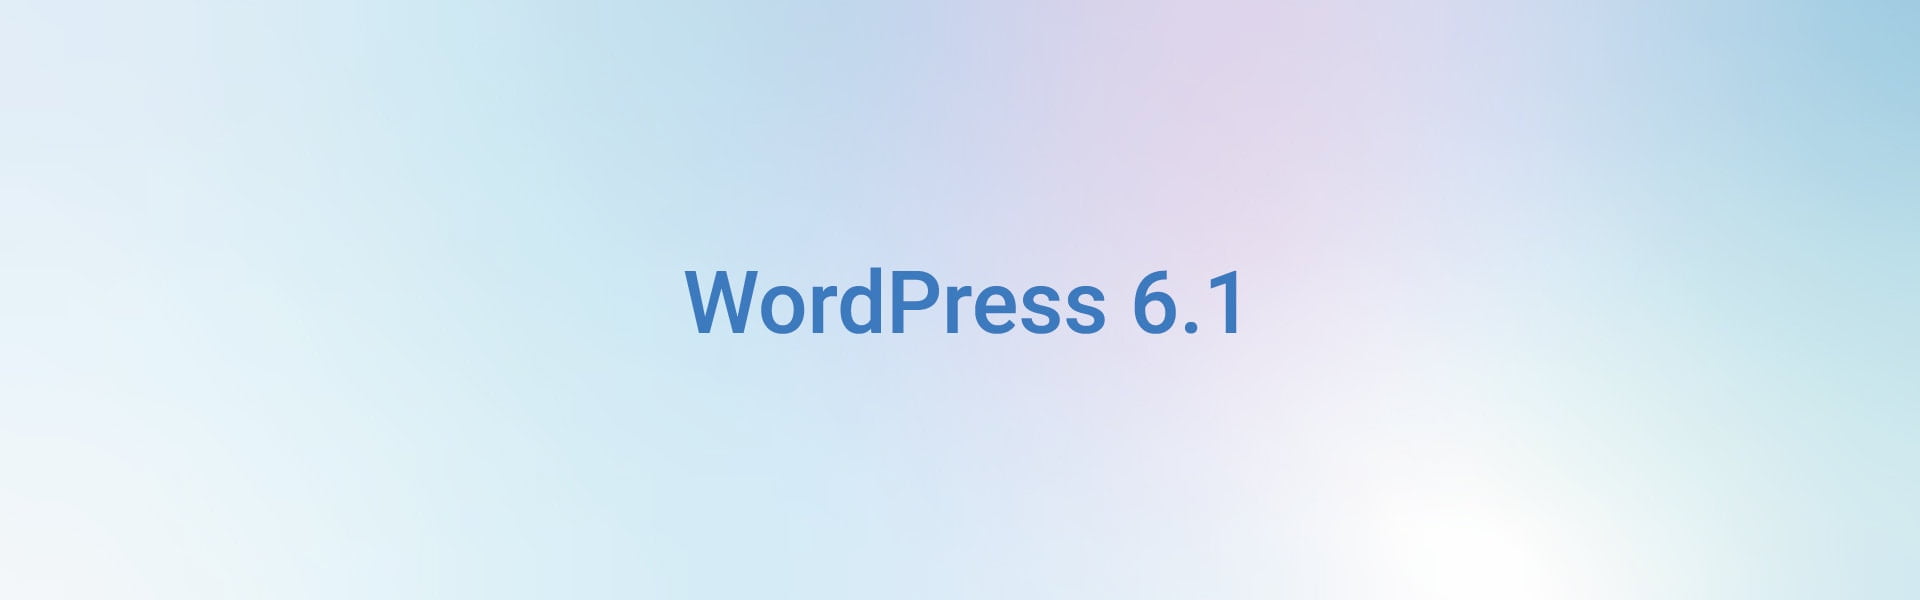 WordPress 6.1 : Quelles sont les nouveautés ?